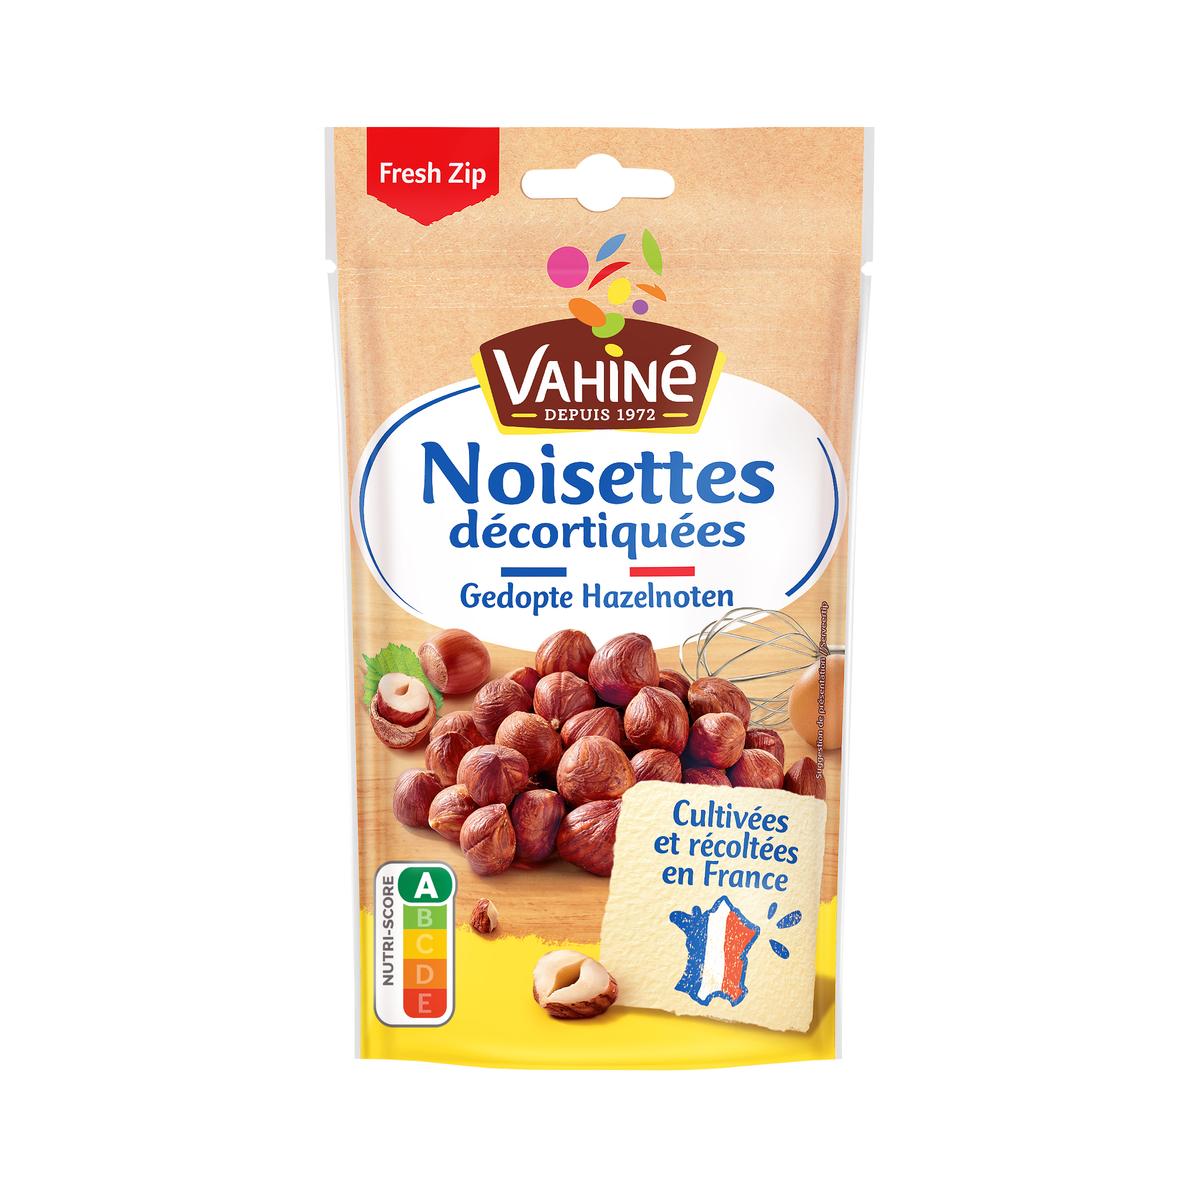 Les Noisettes décortiquées - mon-marché.fr